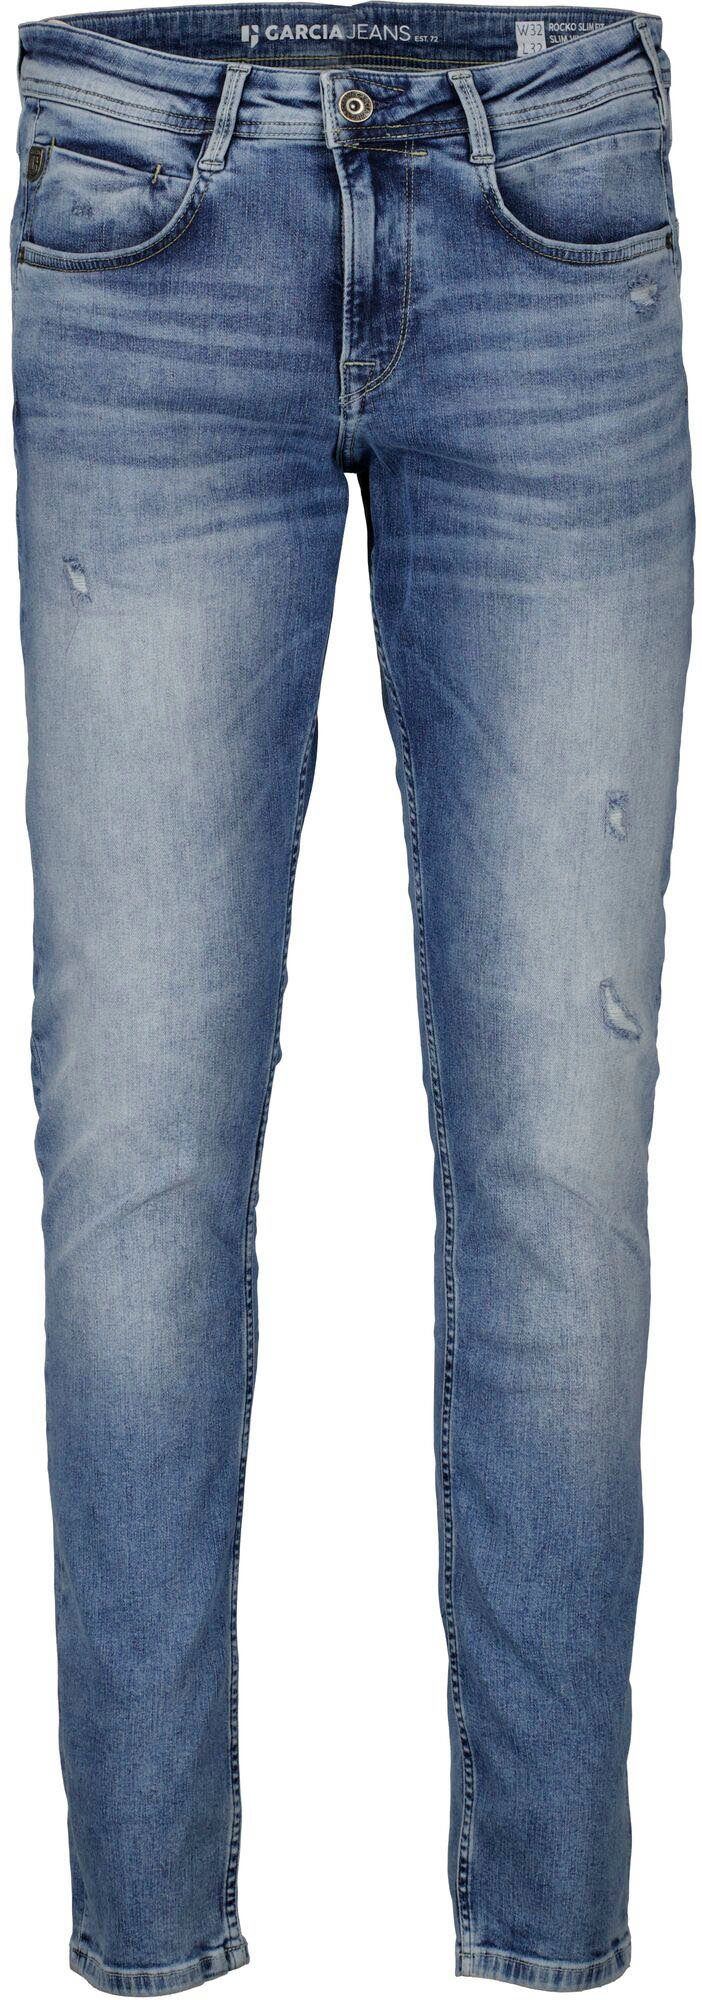 Garcia Waschungen in vintage verschiedenen 5-Pocket-Jeans Rocko used